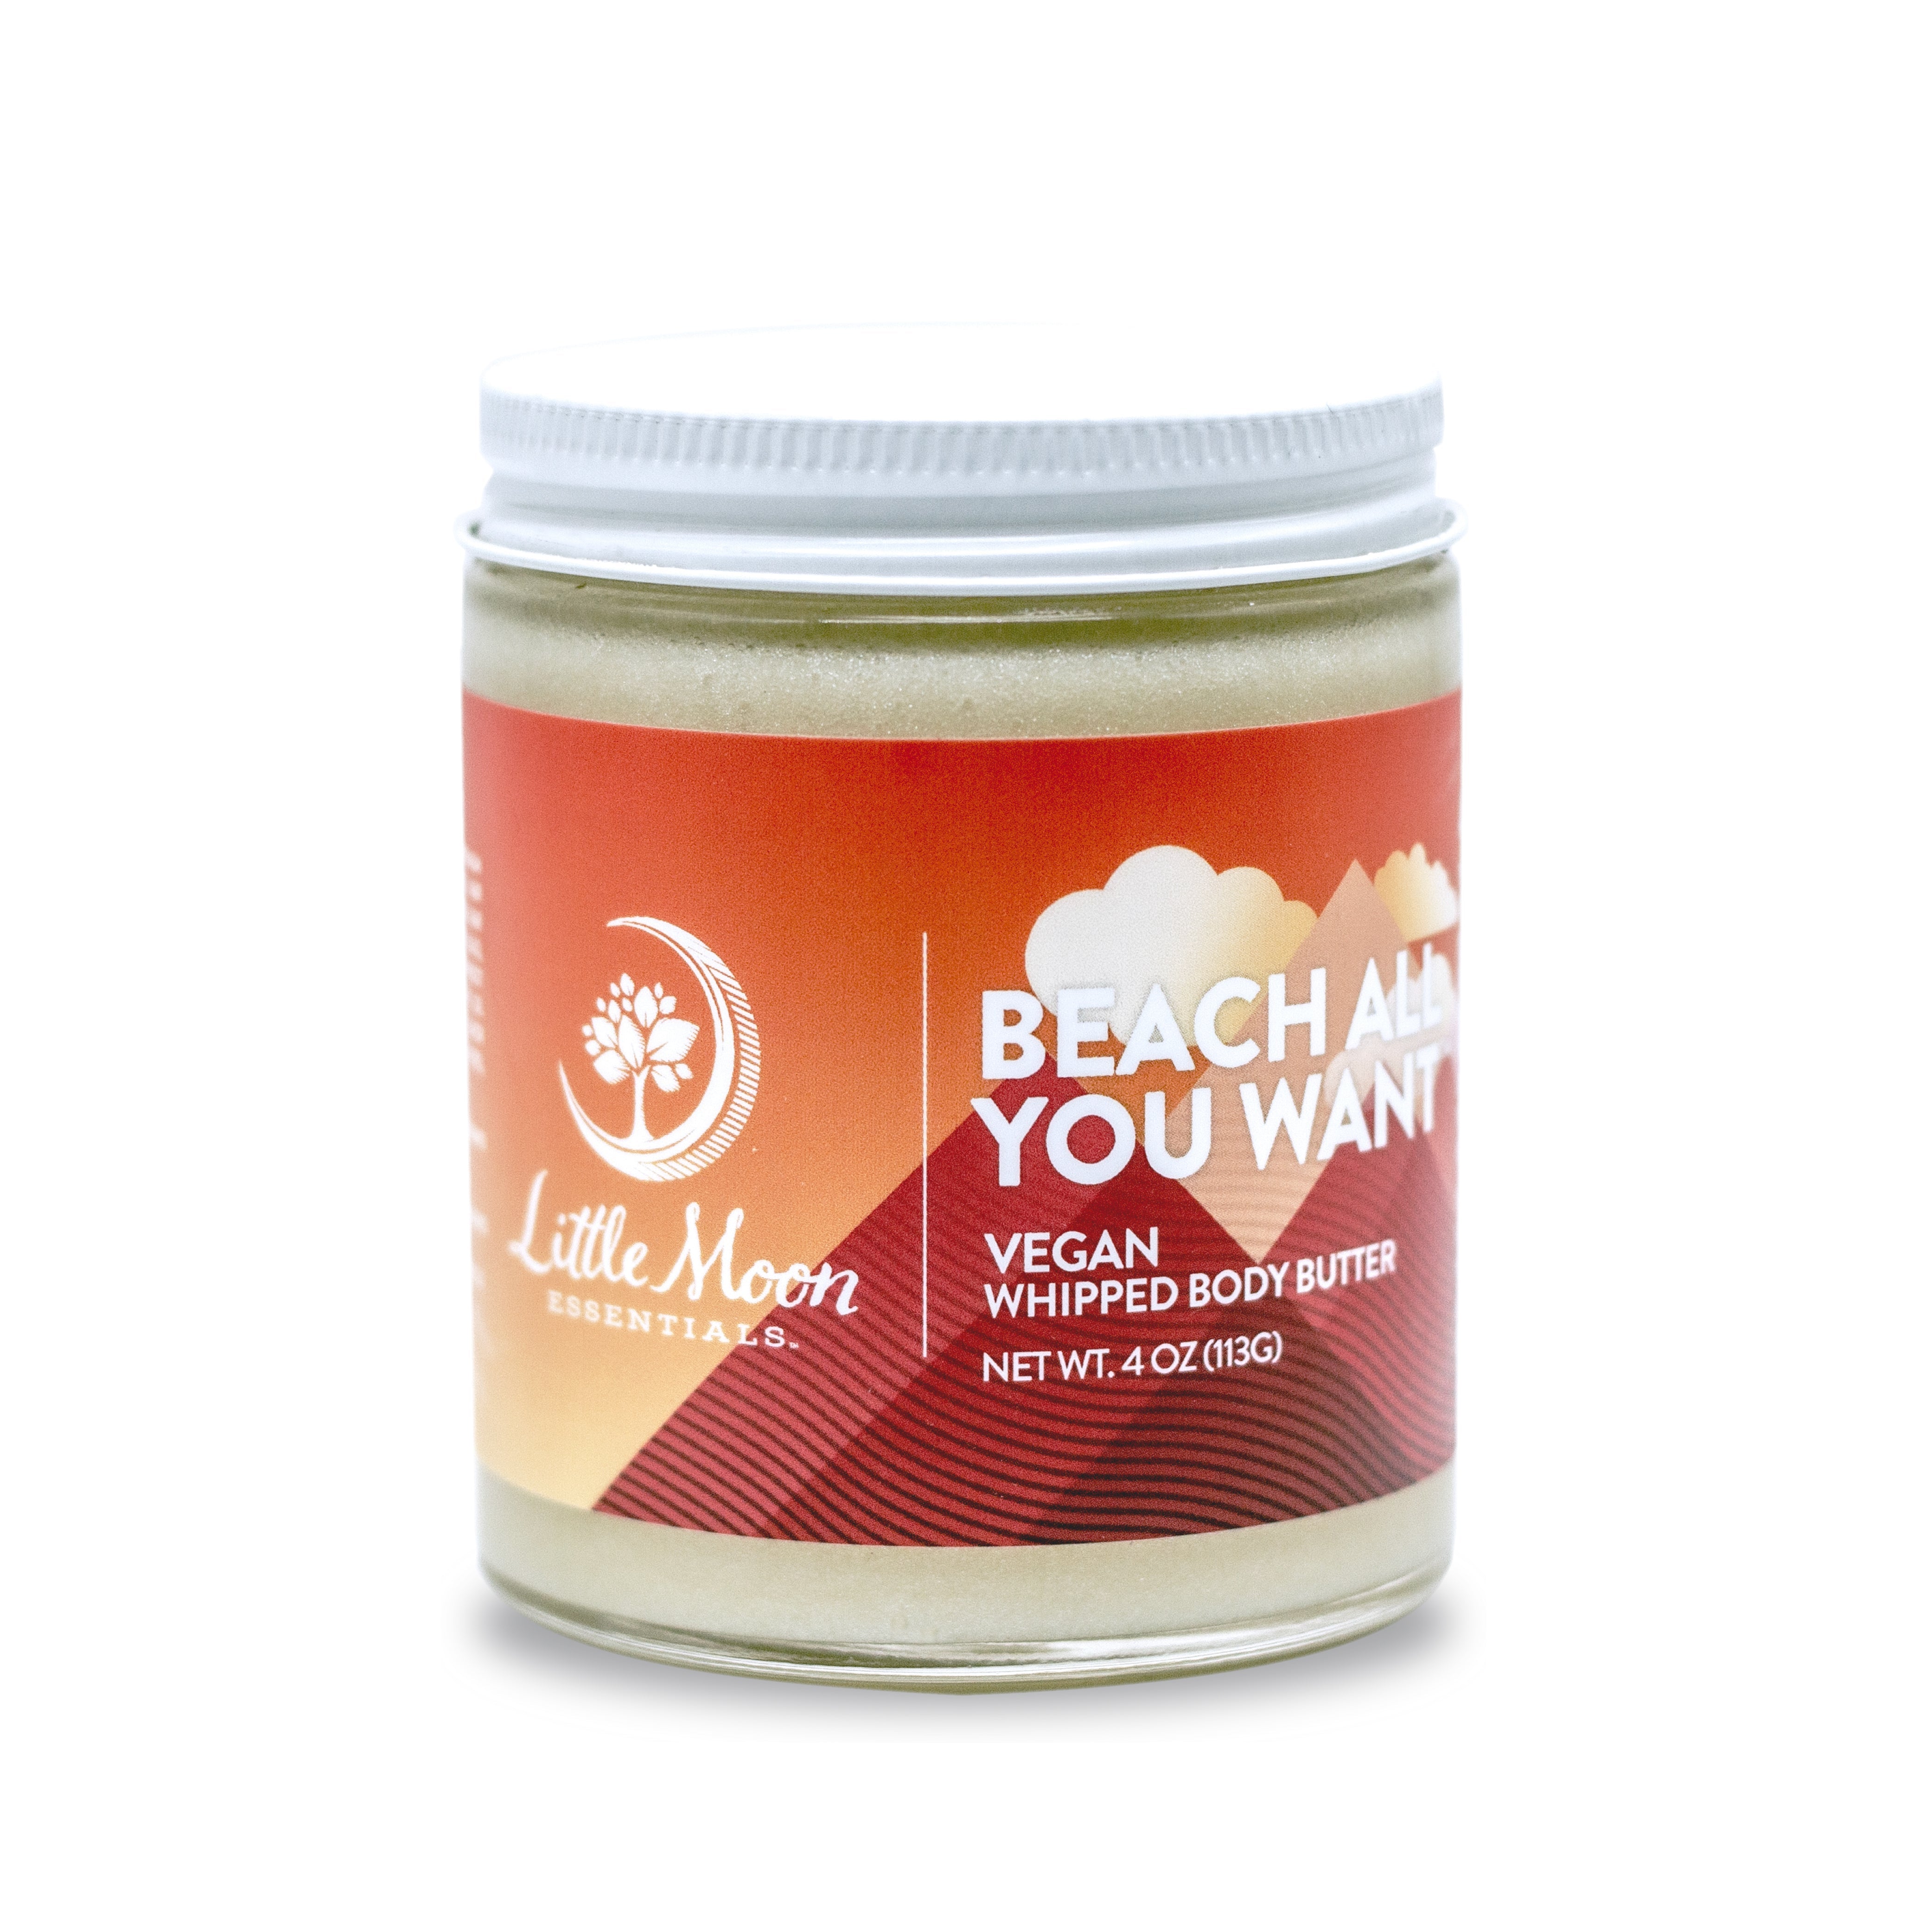 *NEW* Beach All You Want™ Vegan Body Butter - Little Moon Essentials